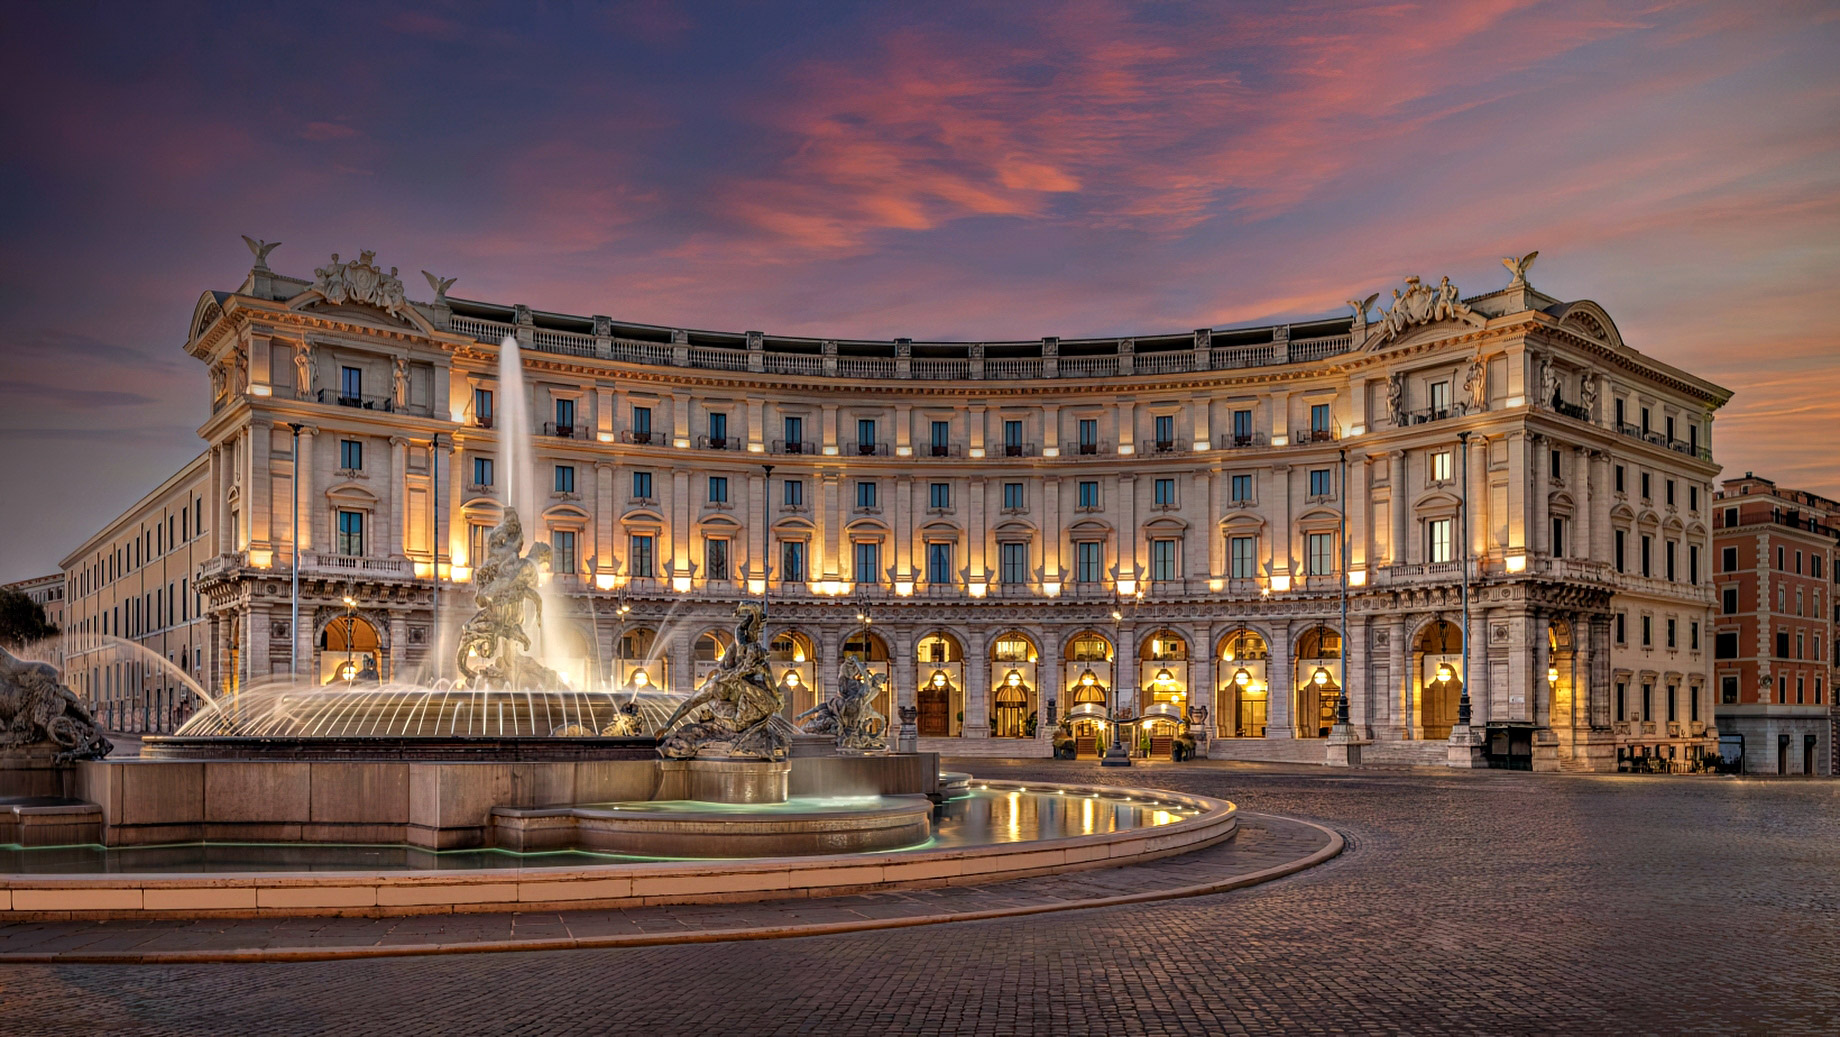 Anantara Palazzo Naiadi Rome Hotel - Rome, Italy - Exterior Sunset